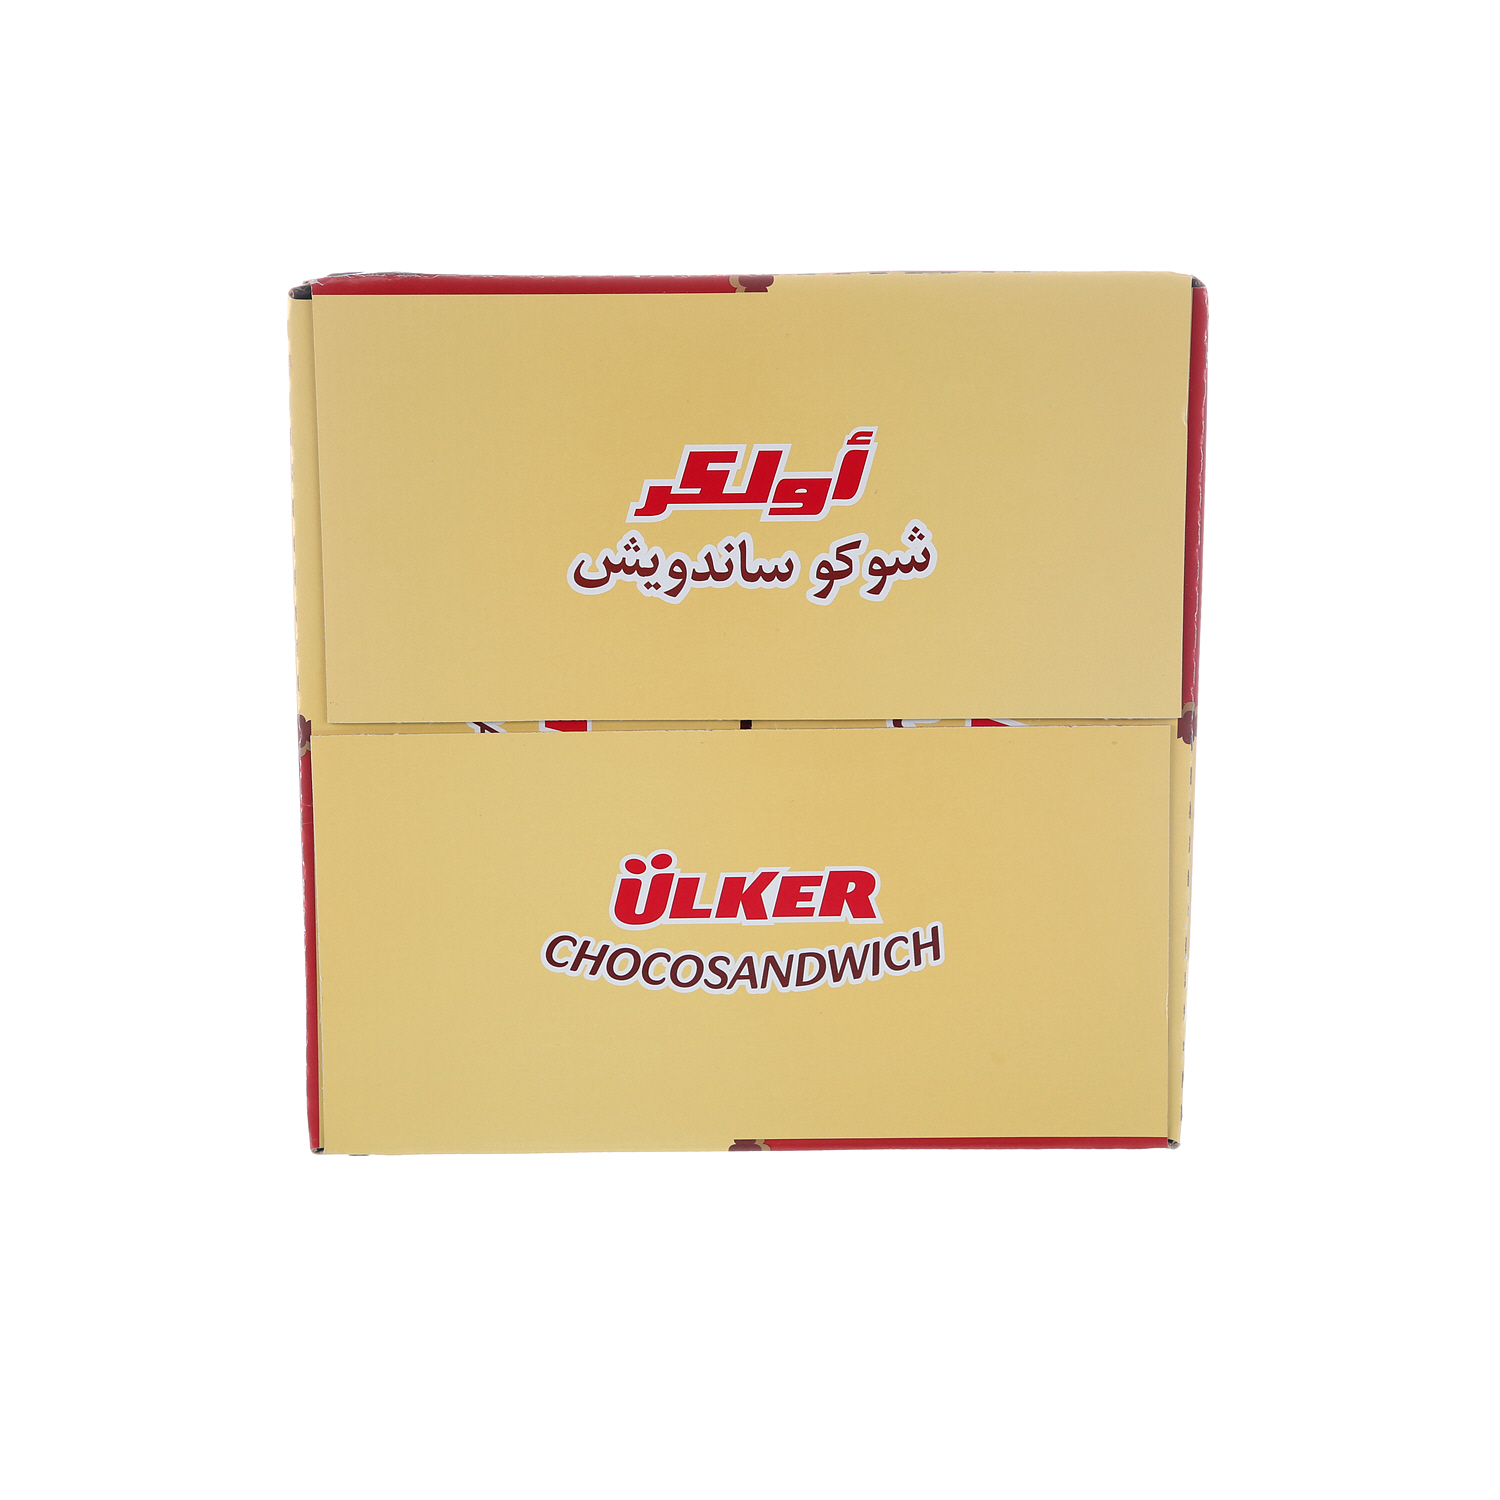 Ulker Choco Sandwich 25gm × 24'S